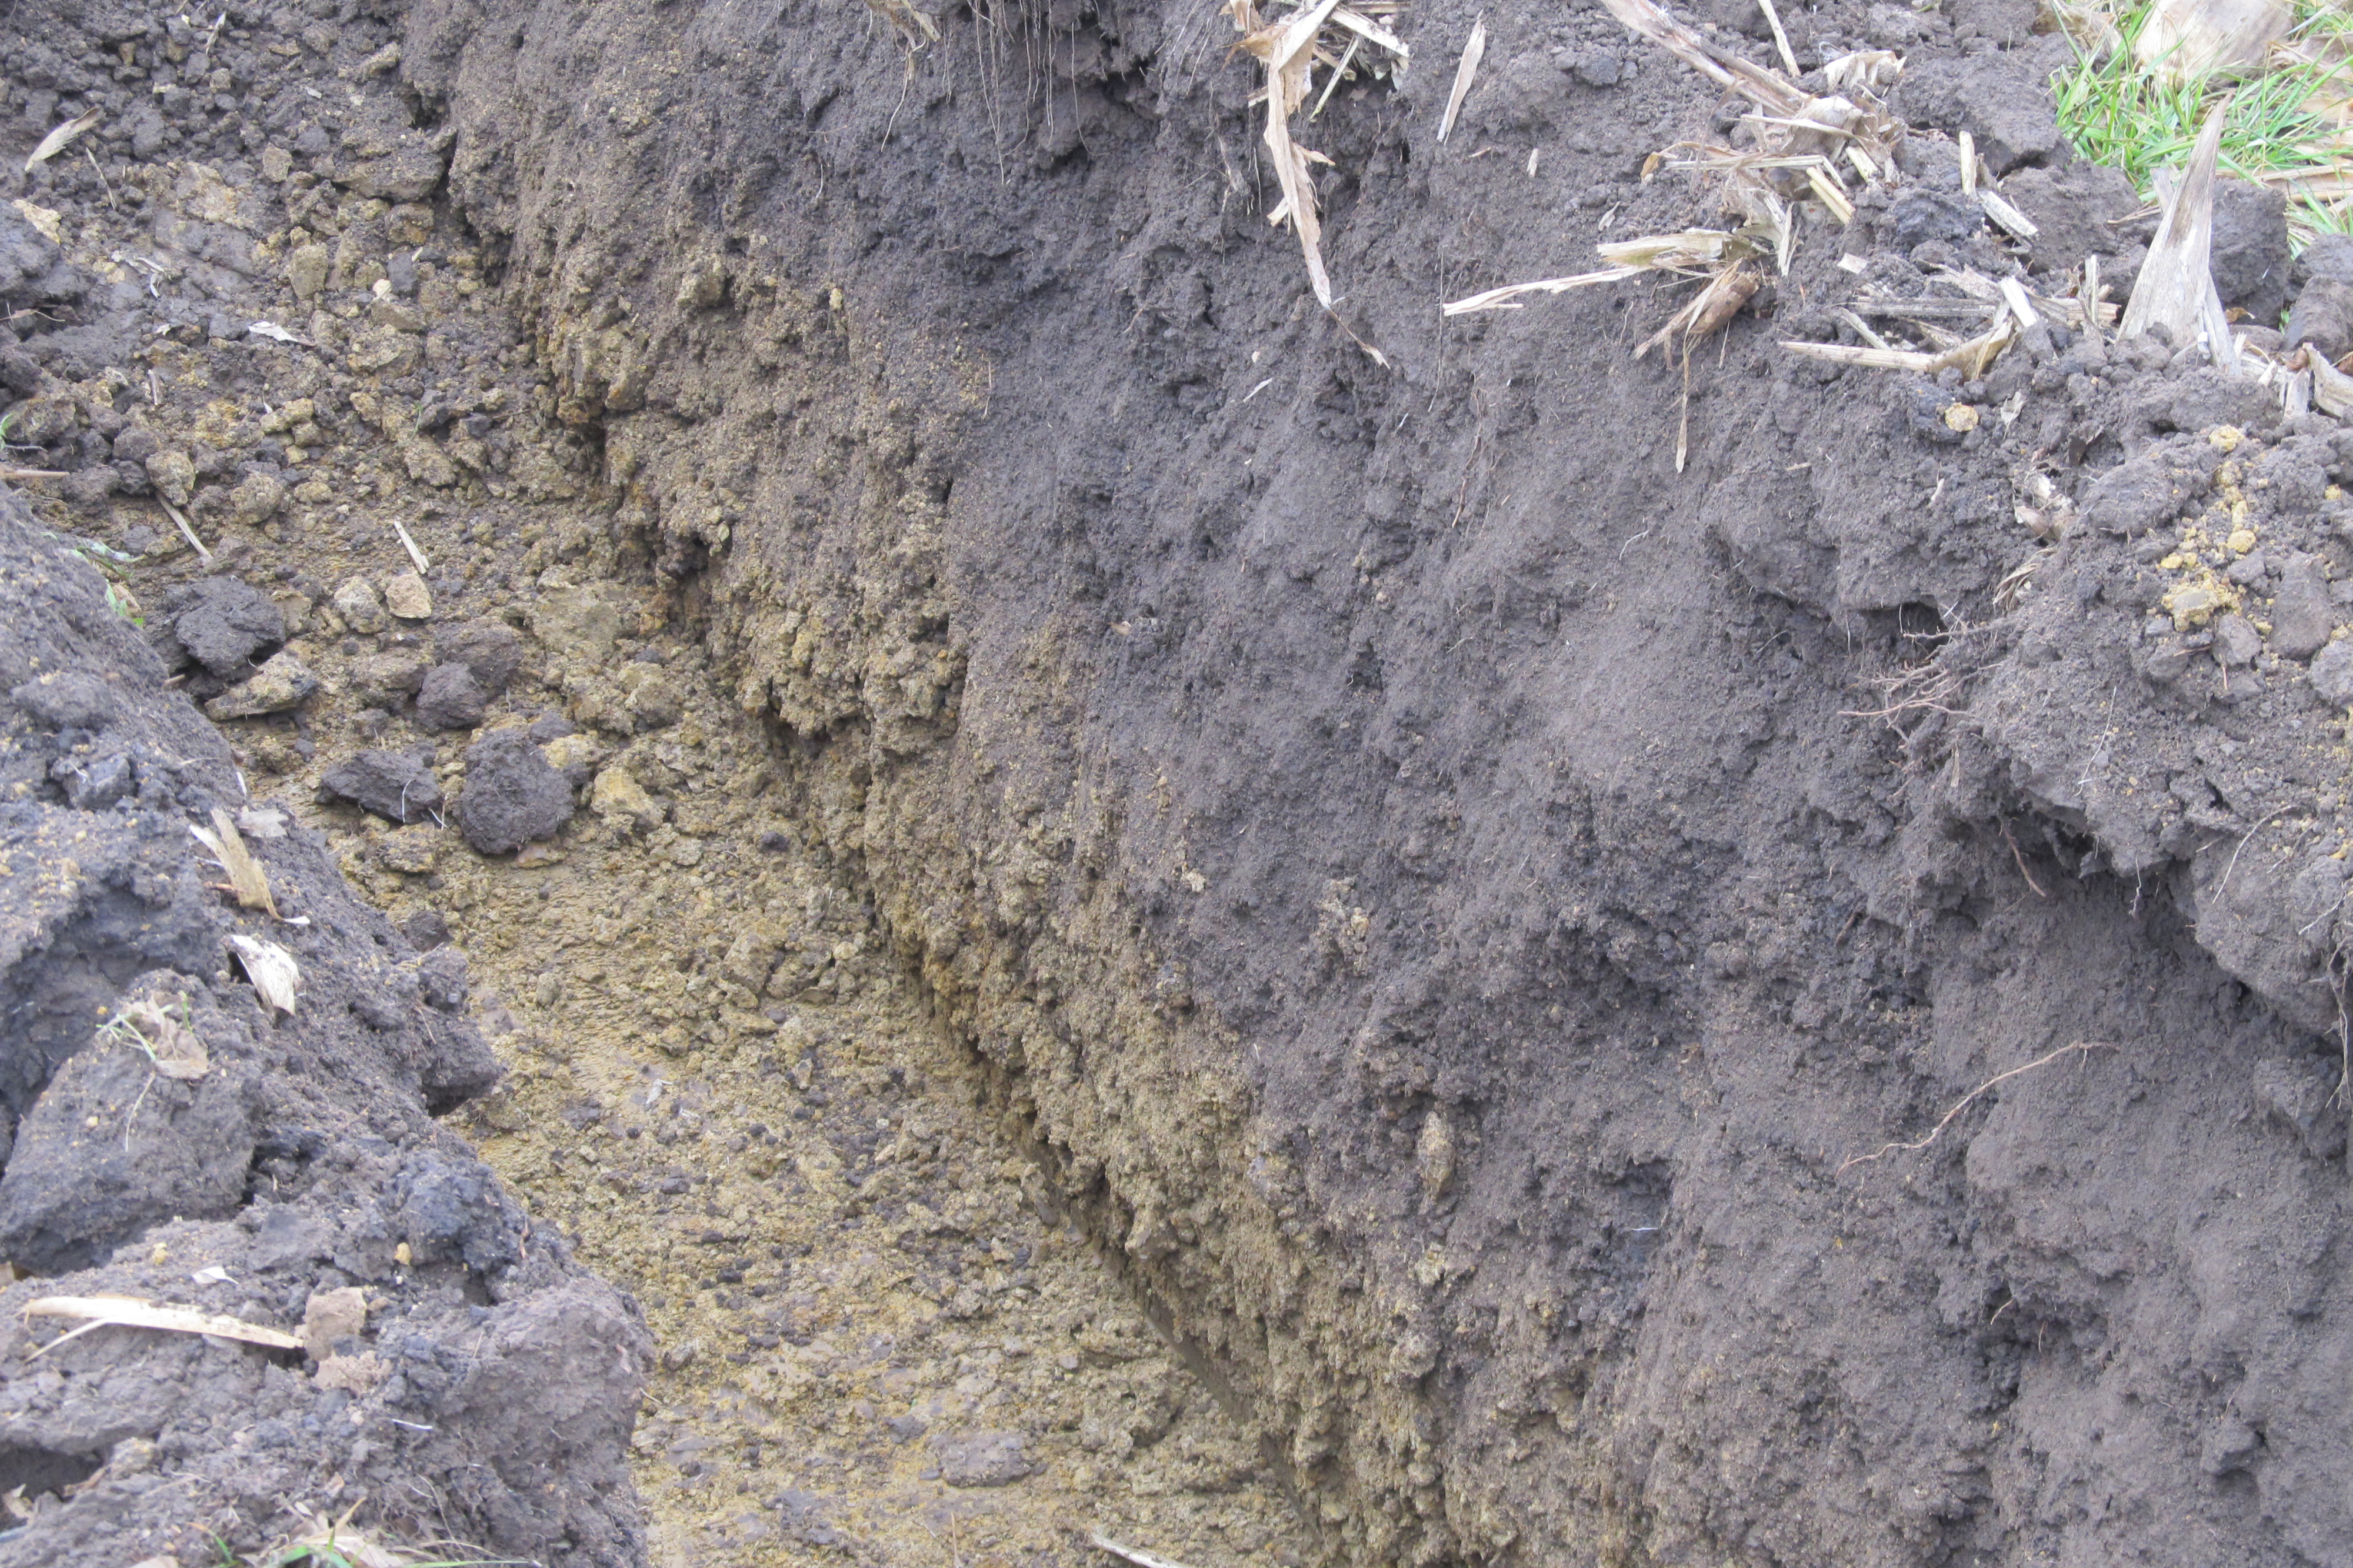 soil conservation ditch